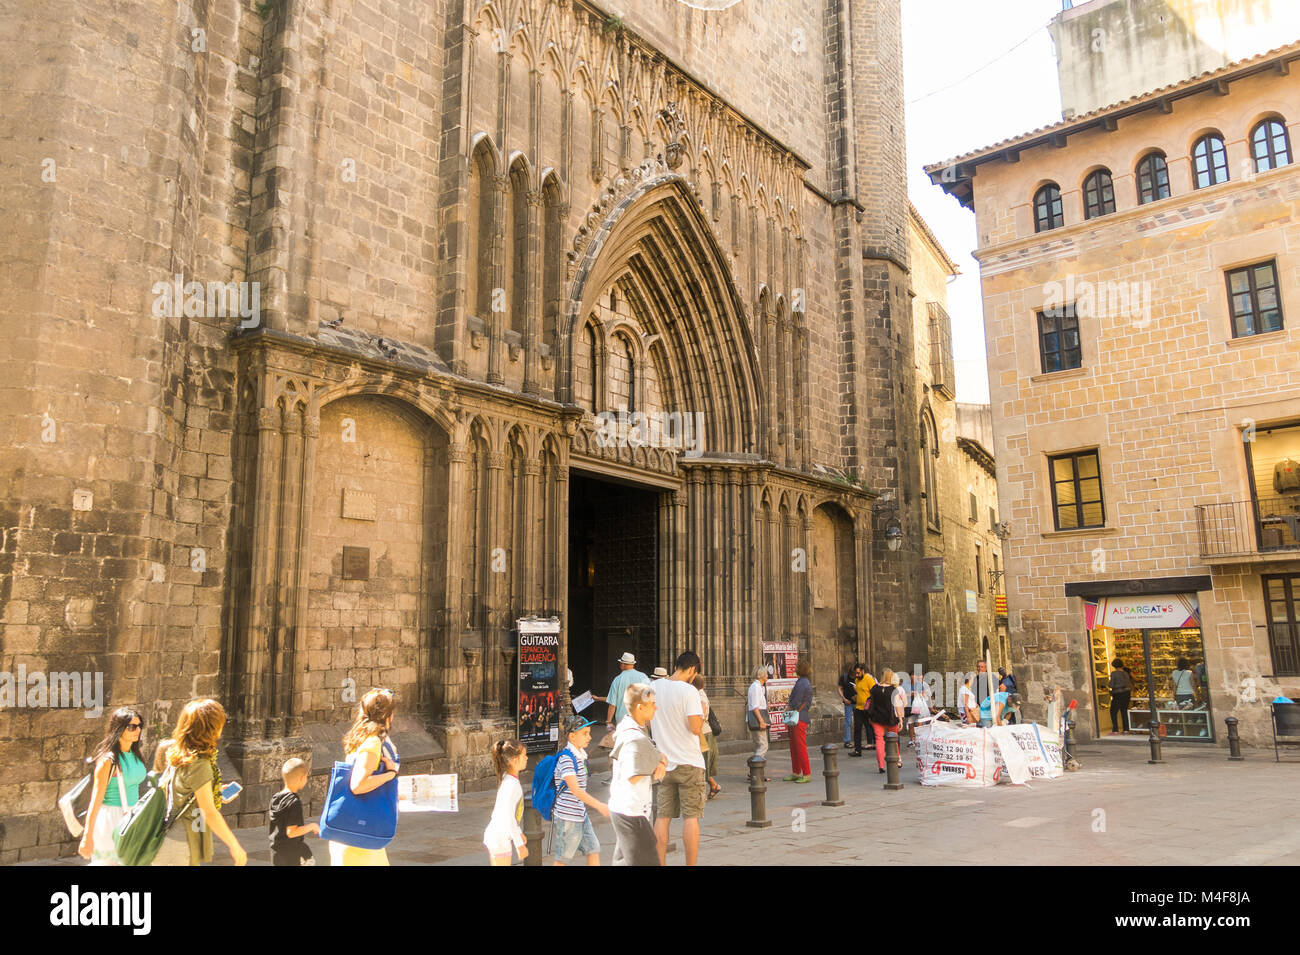 Barcelone, Espagne - 2 septembre : La Basilique de Santa Maria del Pi 14e siècle dans le quartier gothique de la ville. Barcelone, Espagne Banque D'Images